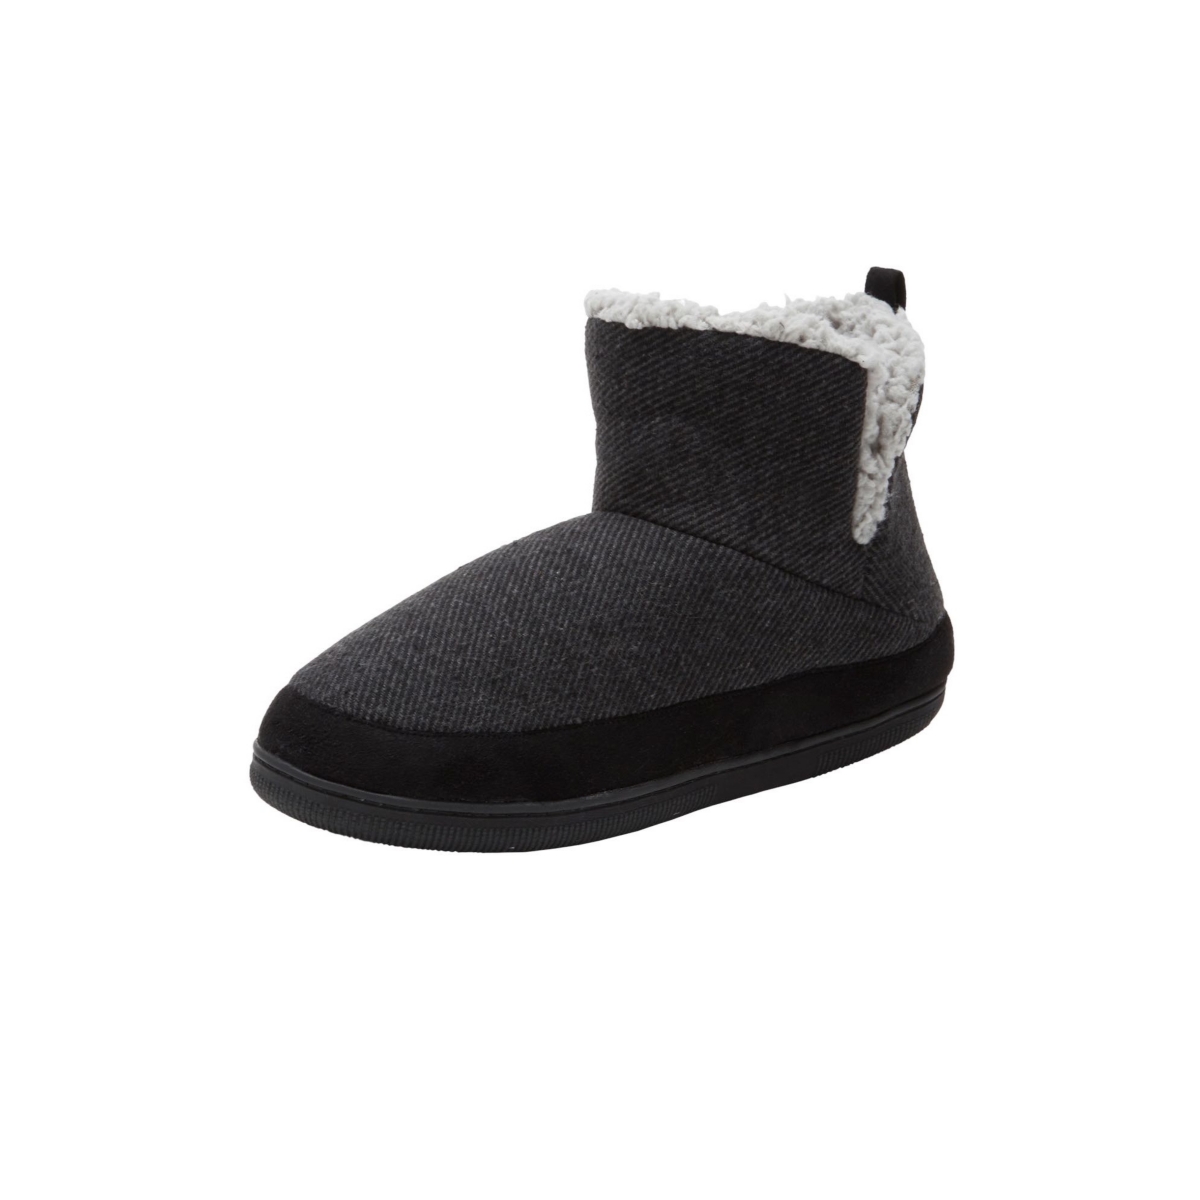 Men's Sherpa Lined Comfort Slipper Boot - Black